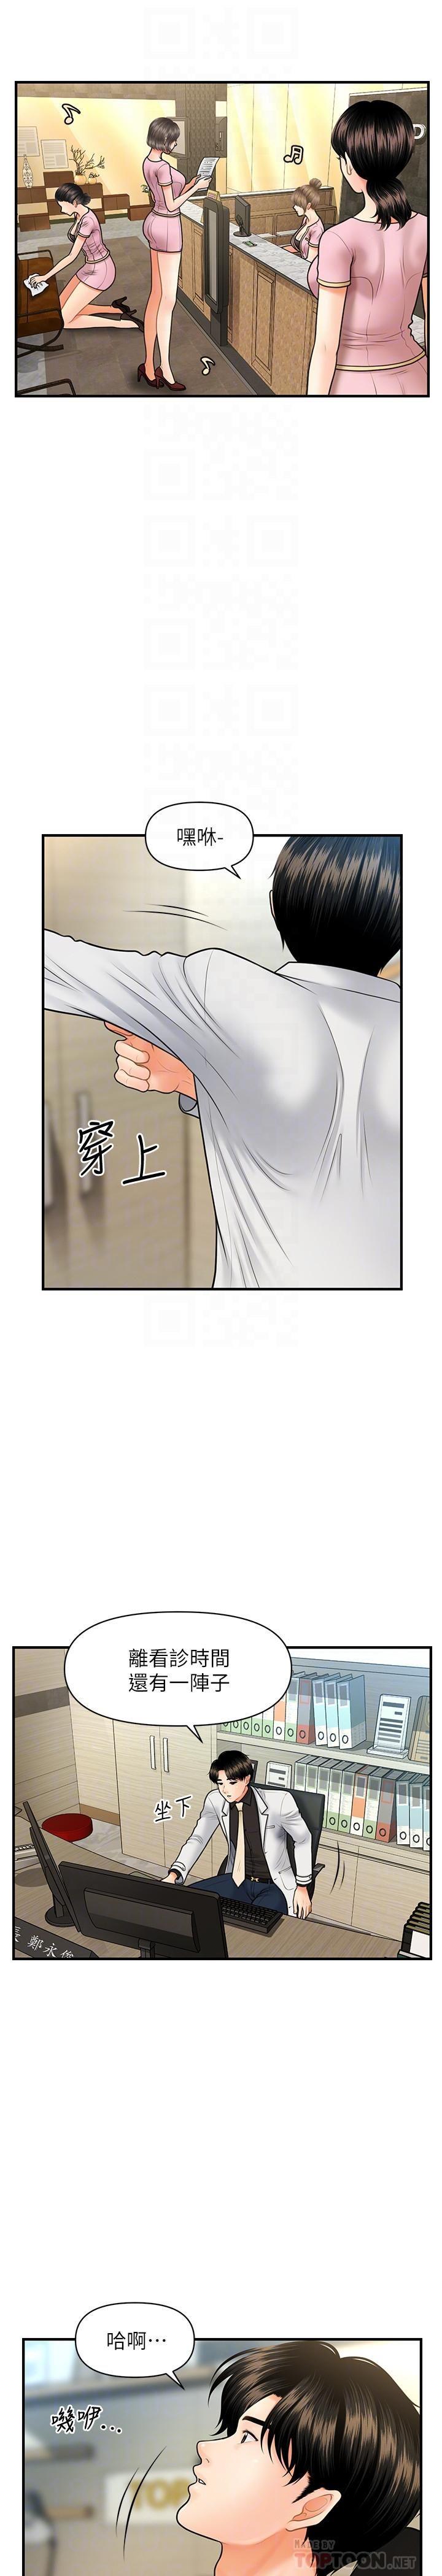 《医美奇鸡》漫画 第19话 - 看看我吧，永俊哥